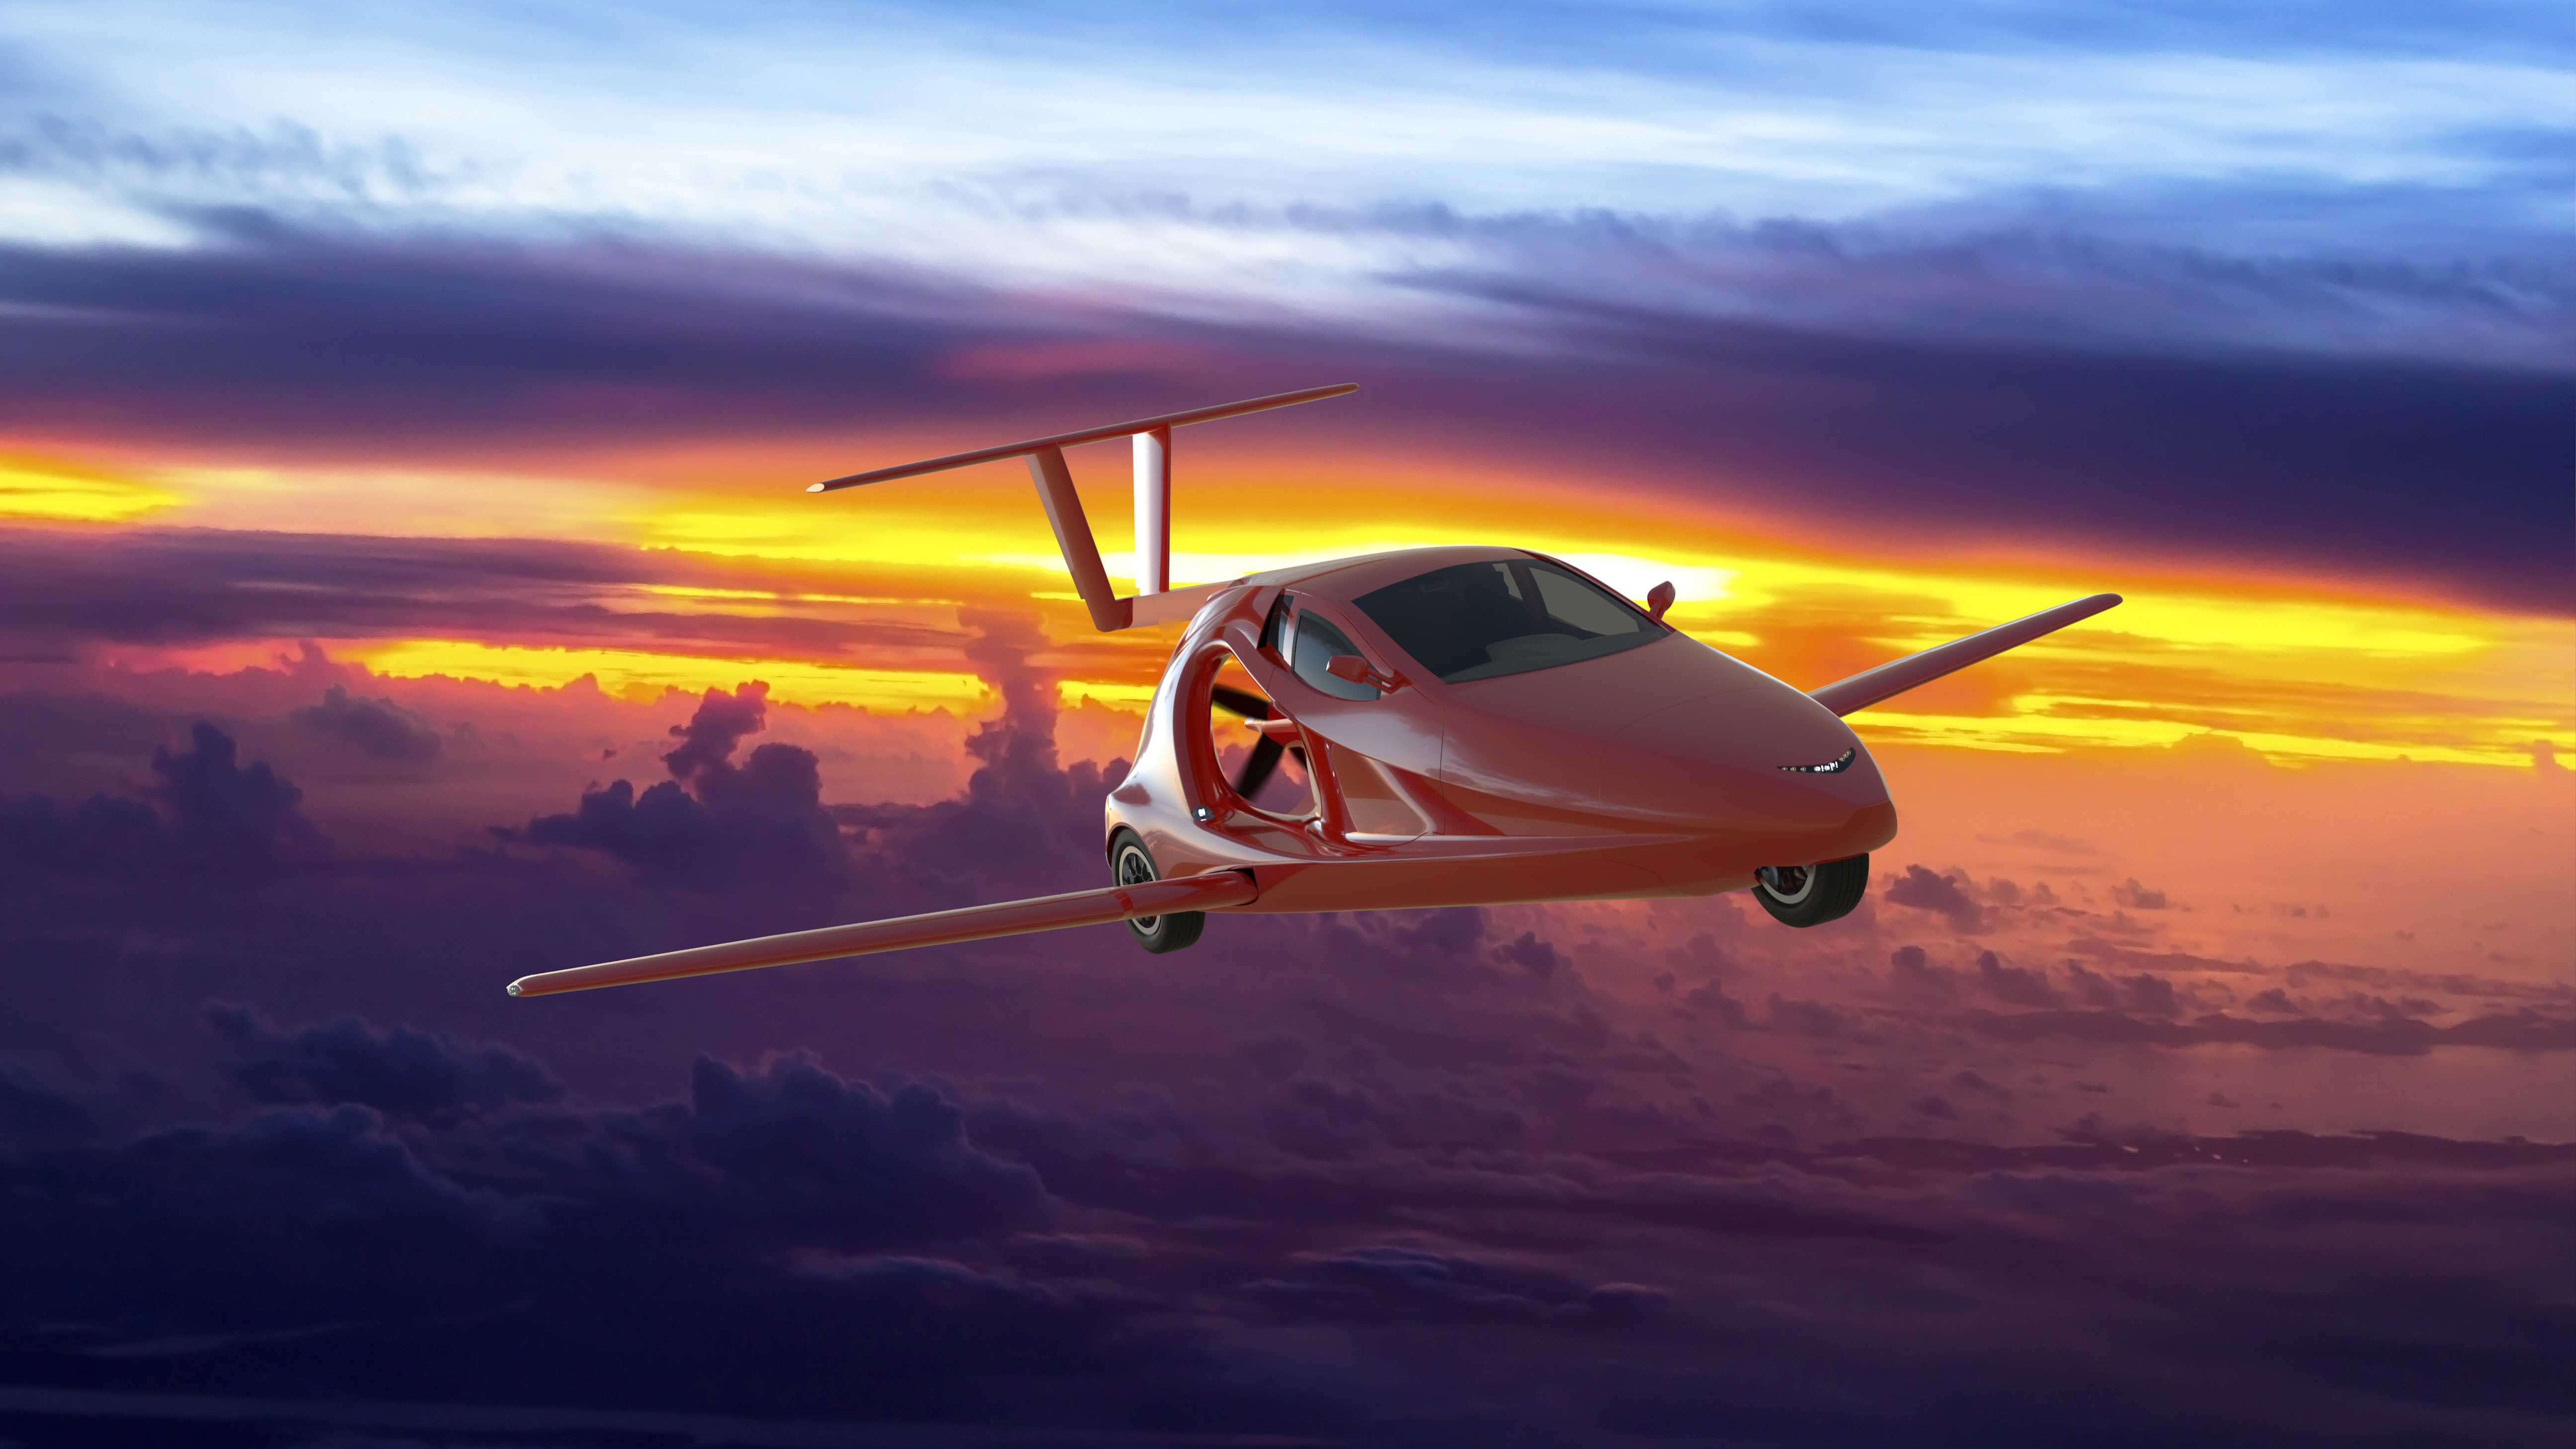 Летающий автомобиль Switchblade от Samson Sky может вскоре появиться на рынке